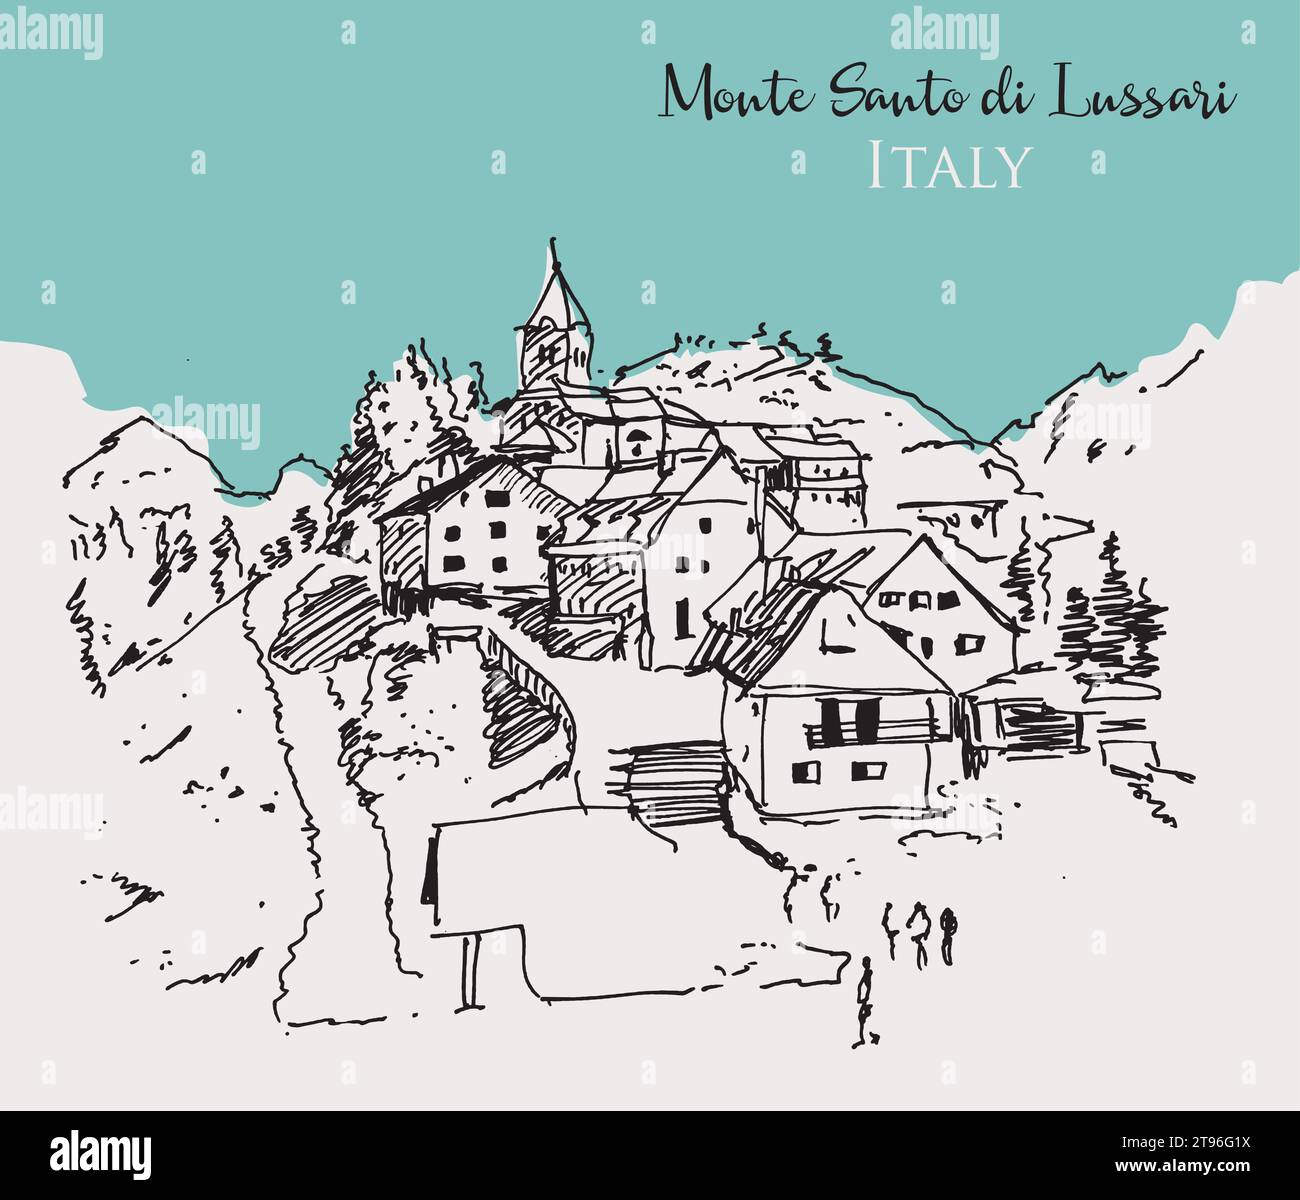 Illustration vectorielle dessinée à la main du Monte Santo di Lussari, une petite station de ski dans le nord de l'Italie. Illustration de Vecteur